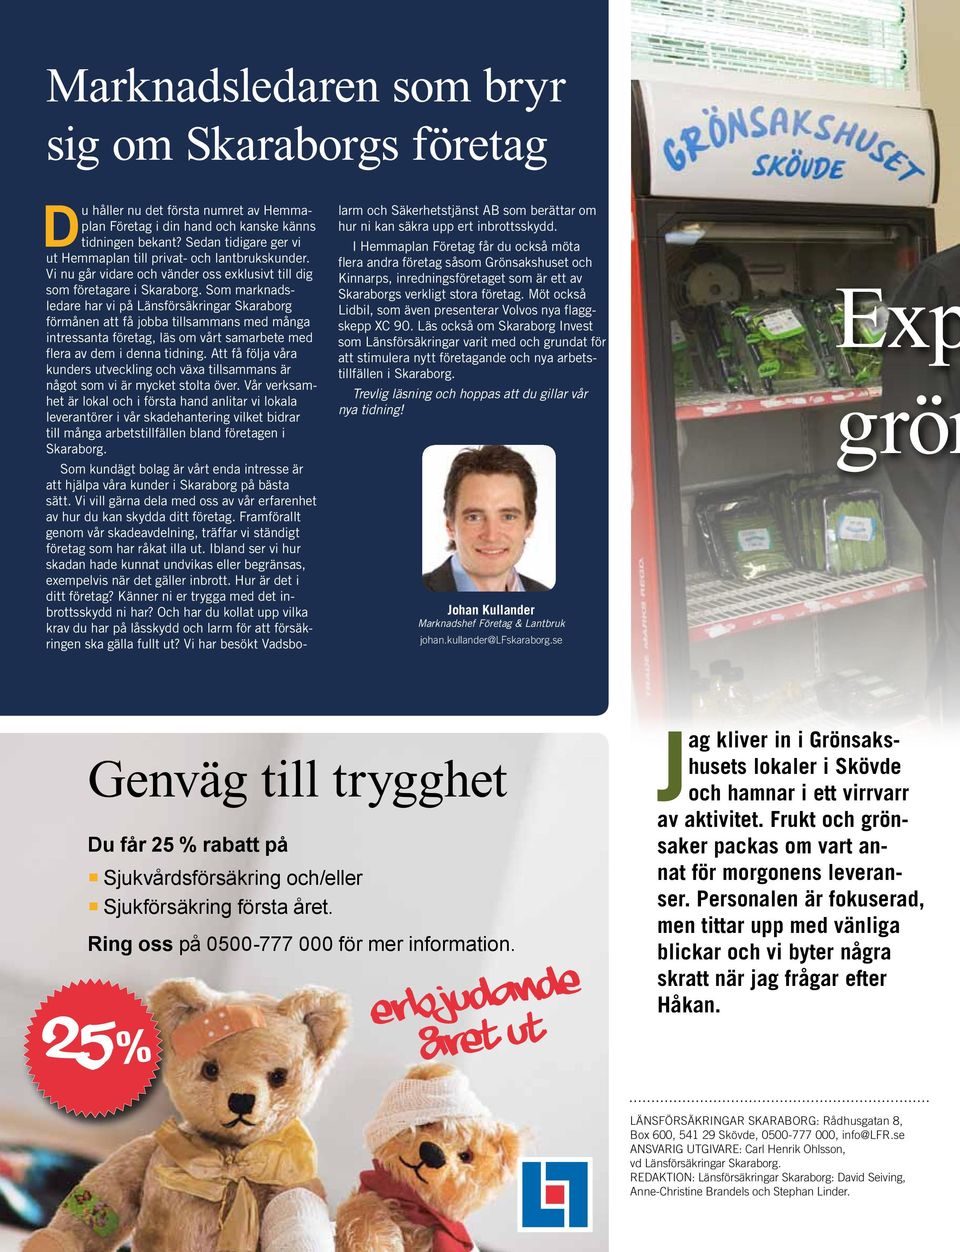 Som marknadsledare har vi på Länsförsäkringar Skaraborg förmånen att få jobba tillsammans med många intressanta företag, läs om vårt samarbete med flera av dem i denna tidning.